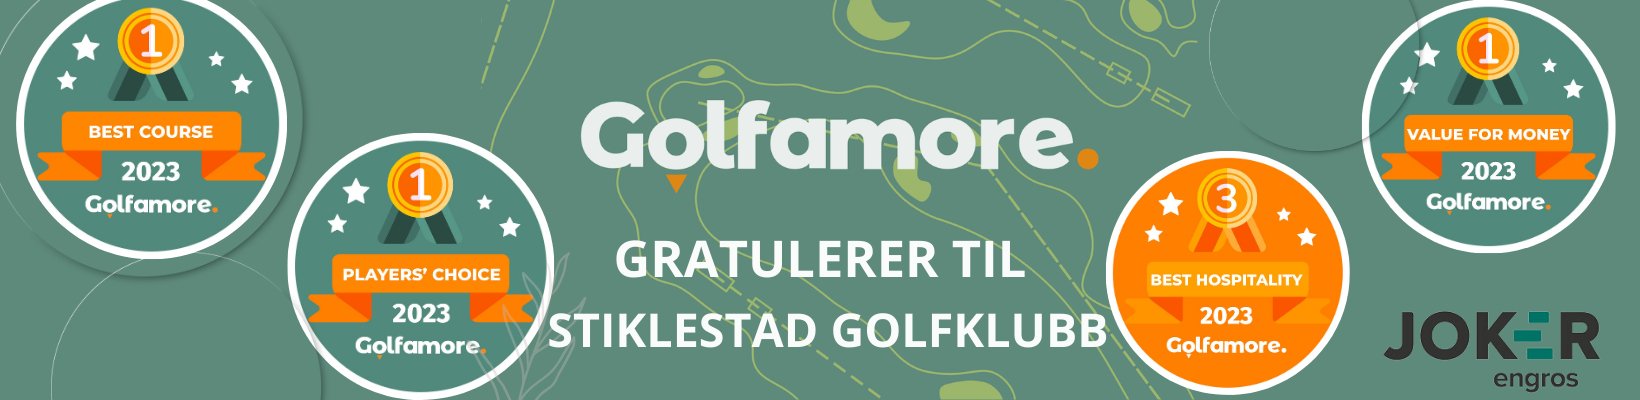 Gratulerer til Stiklestad Golfklubb – En Strålende Prestasjon i Golfamore Awards 2023! - Joker Engros AS